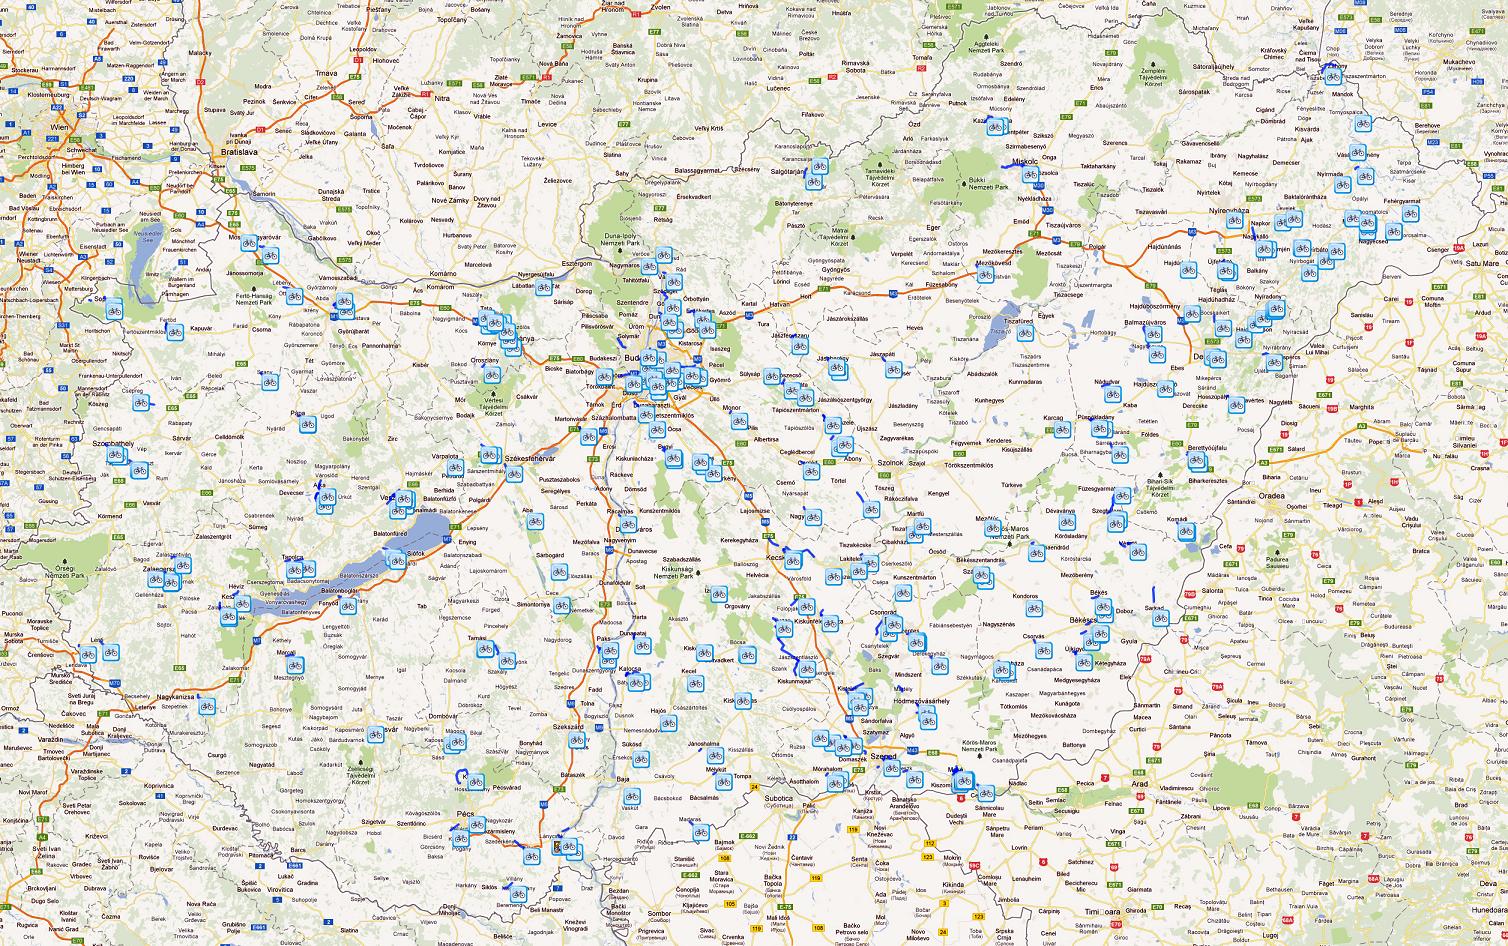 térkép magyarország és környéke Magyarország kerékpáros térképe   Biciklopédia térkép magyarország és környéke